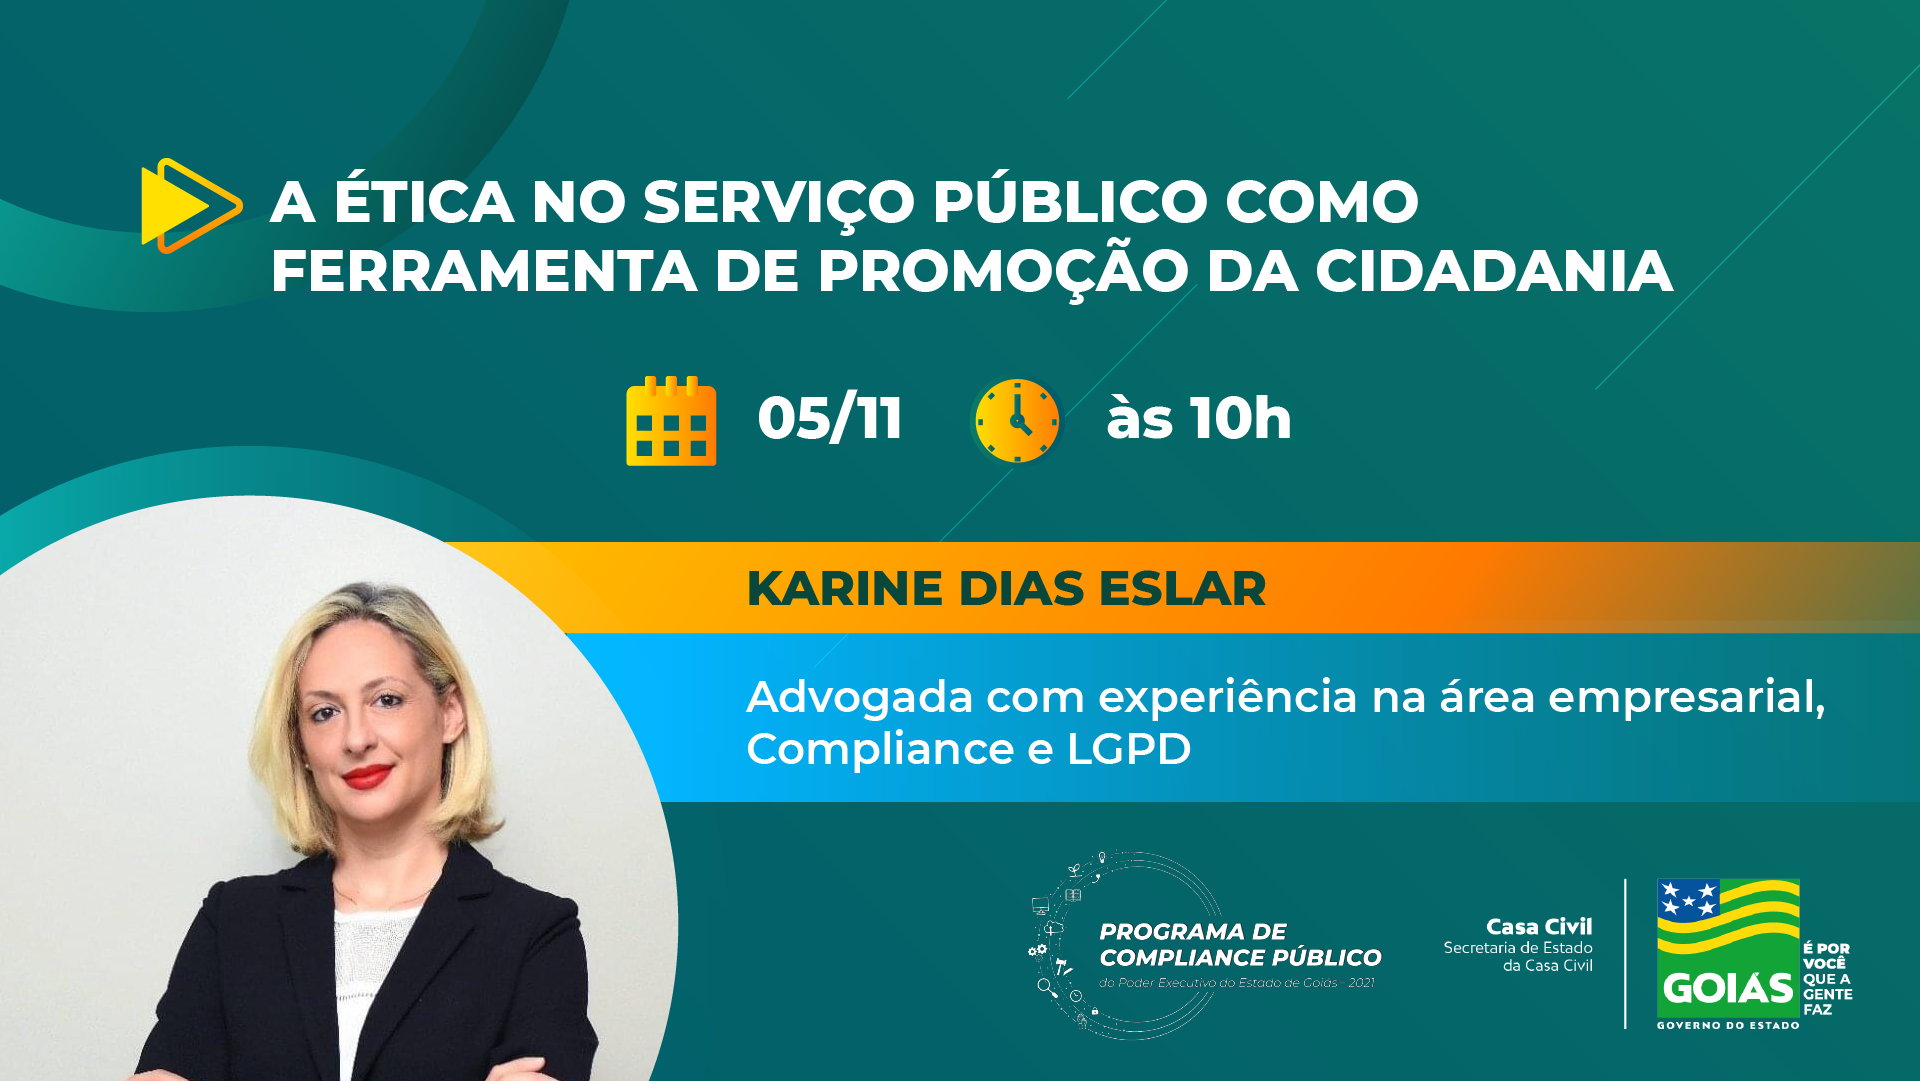 Palestra será ministrada pela advogada especialista em Compliance e Lei Geral de Proteção de Dados Pessoais (LGPD) Karine Dias